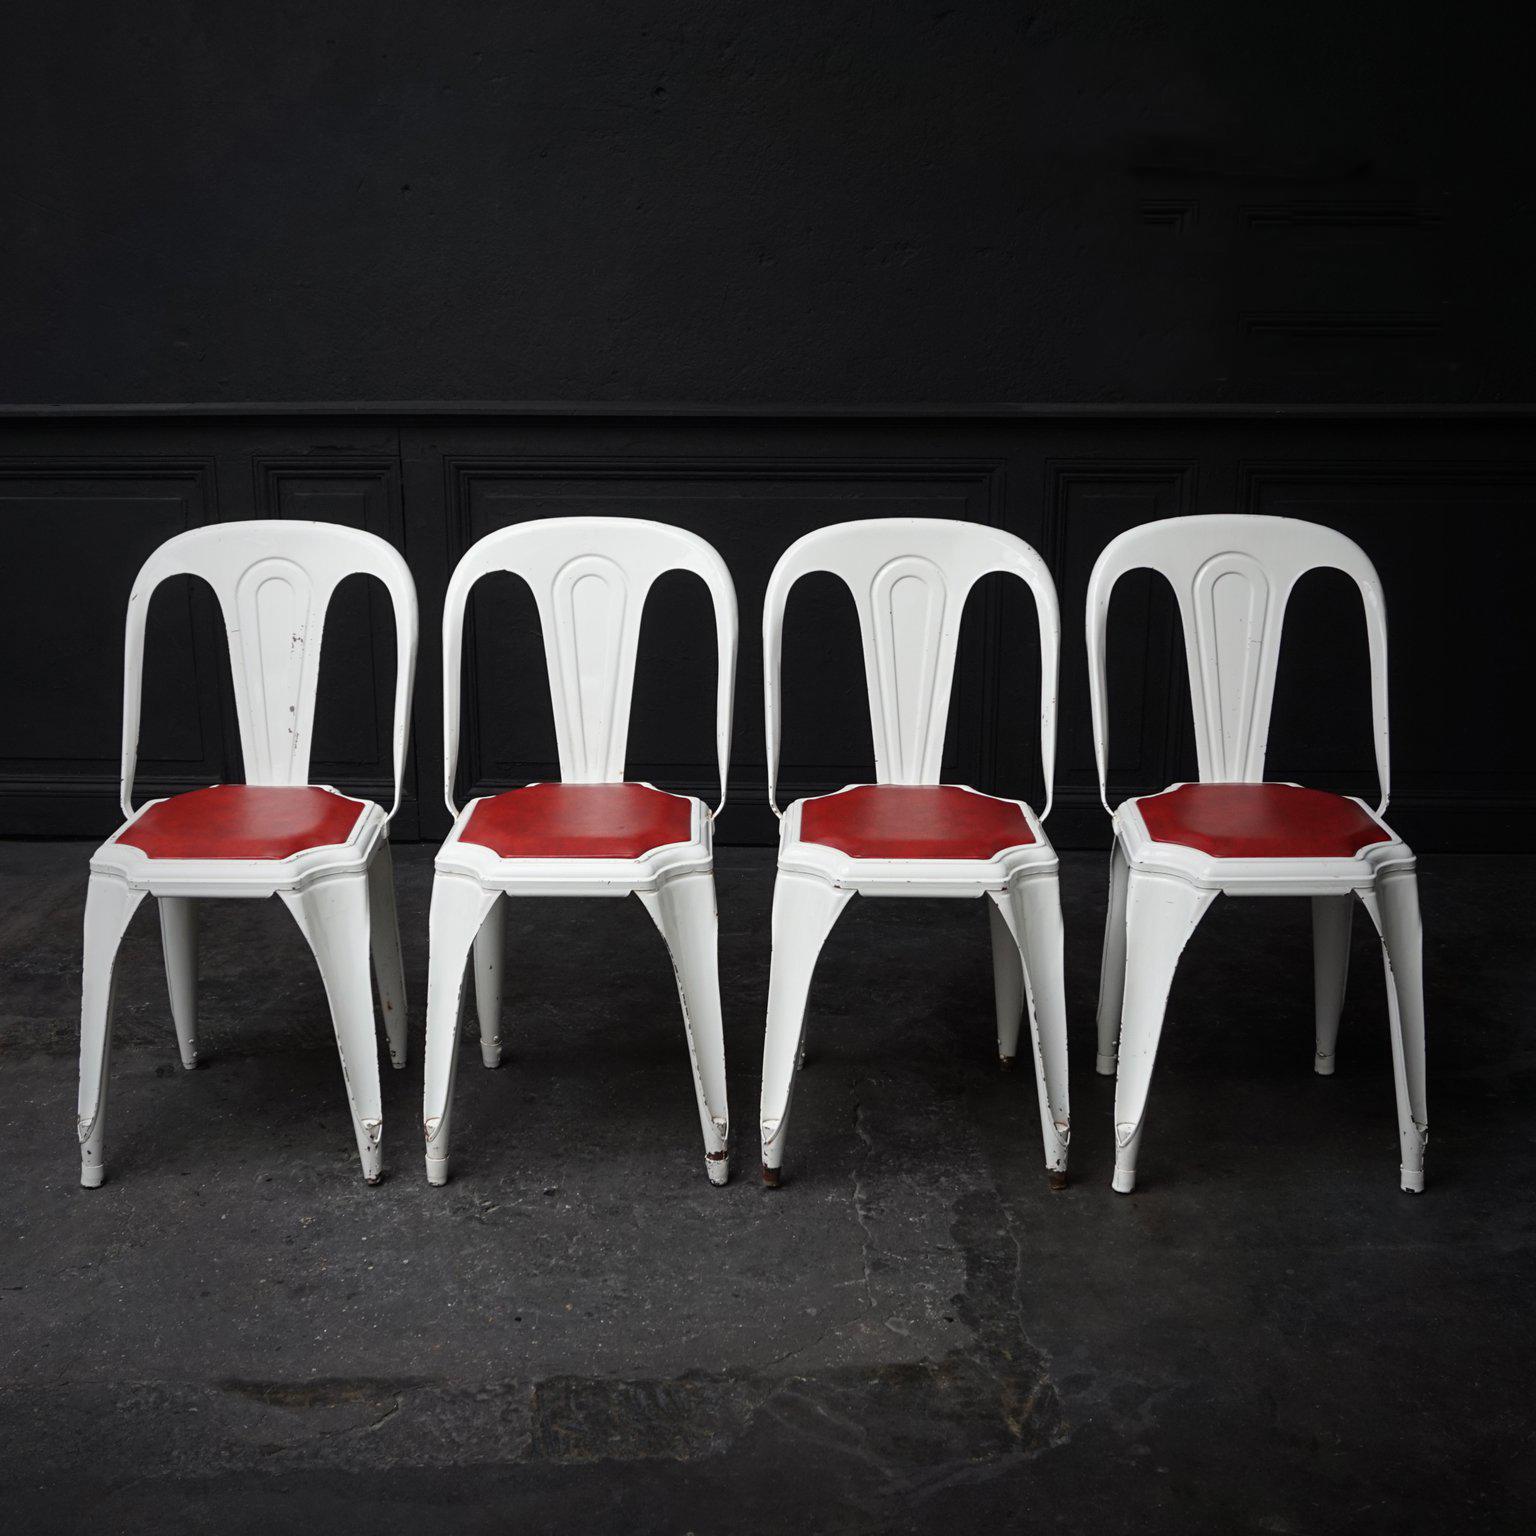 Rares chaises à structure en acier Fibrocit Industrial des années 1950. L'une des premières chaises de terrasse empilables et inoxydables, également connue sous le nom de Tolix belge.

Regardez comme cet ensemble empilable de quatre chaises bistro